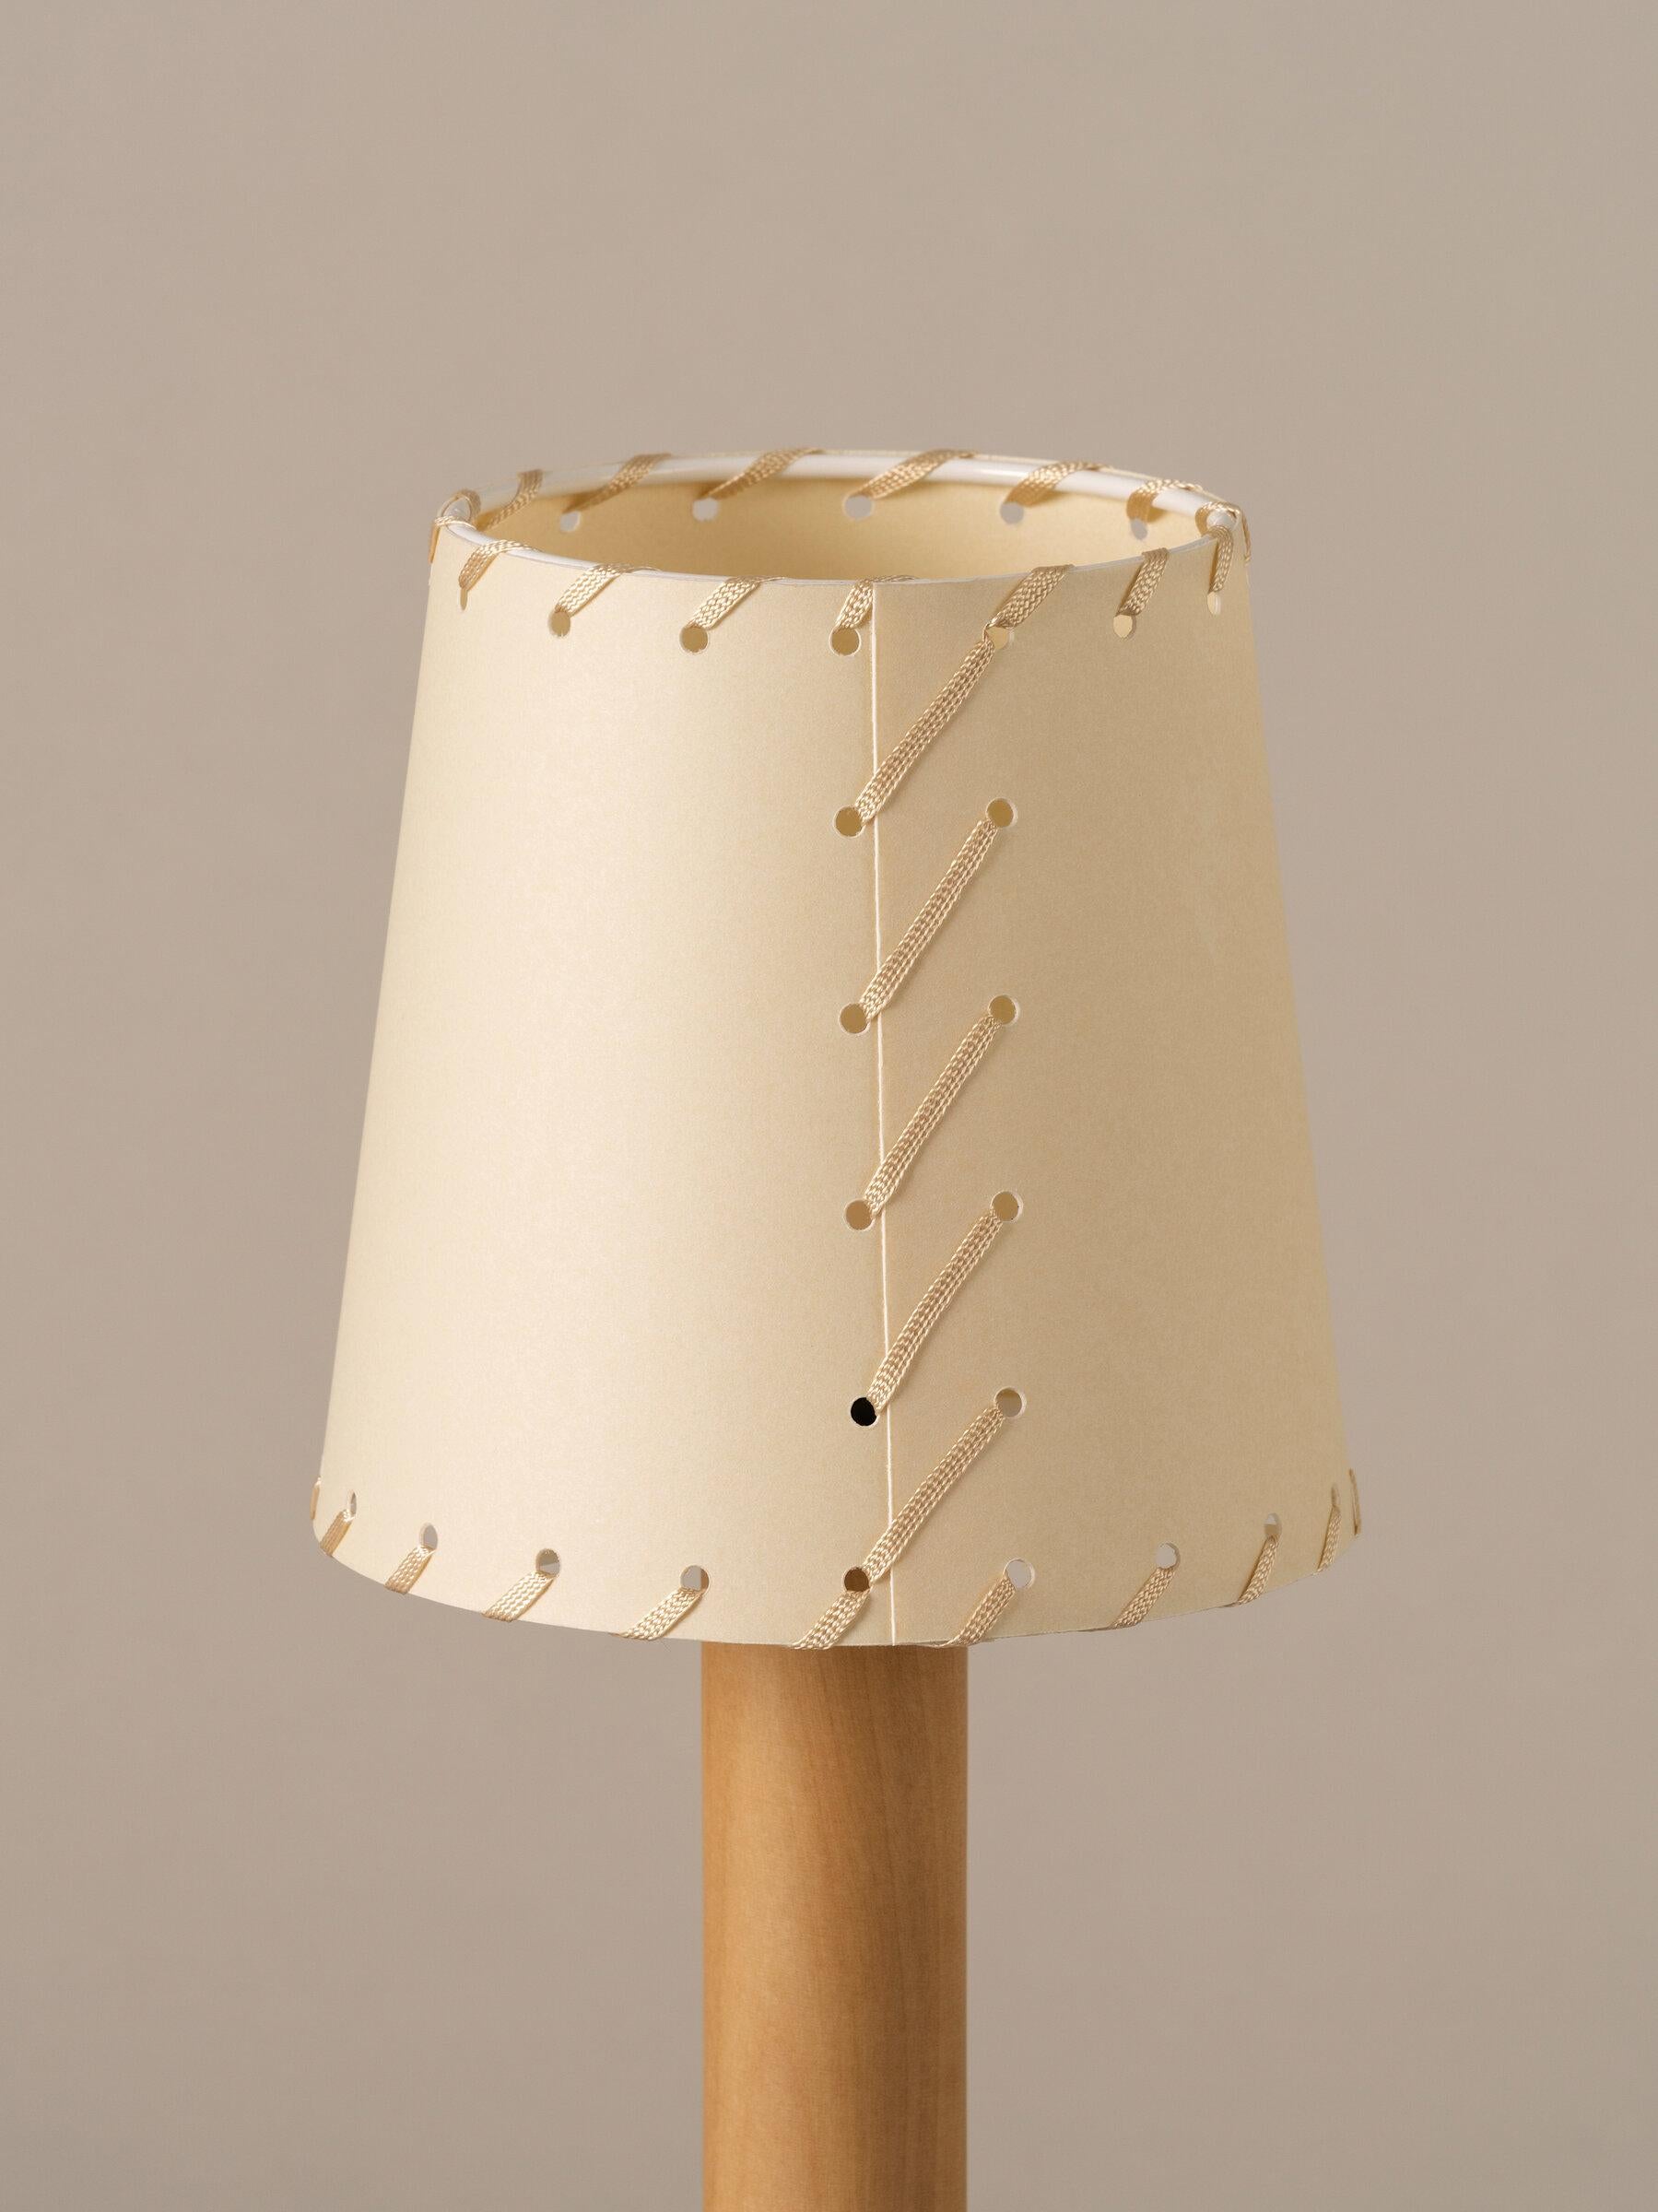 Beige Básica Mínima Batería Table Lamp by Santiago Roqueta, Santa & Cole In New Condition For Sale In Geneve, CH